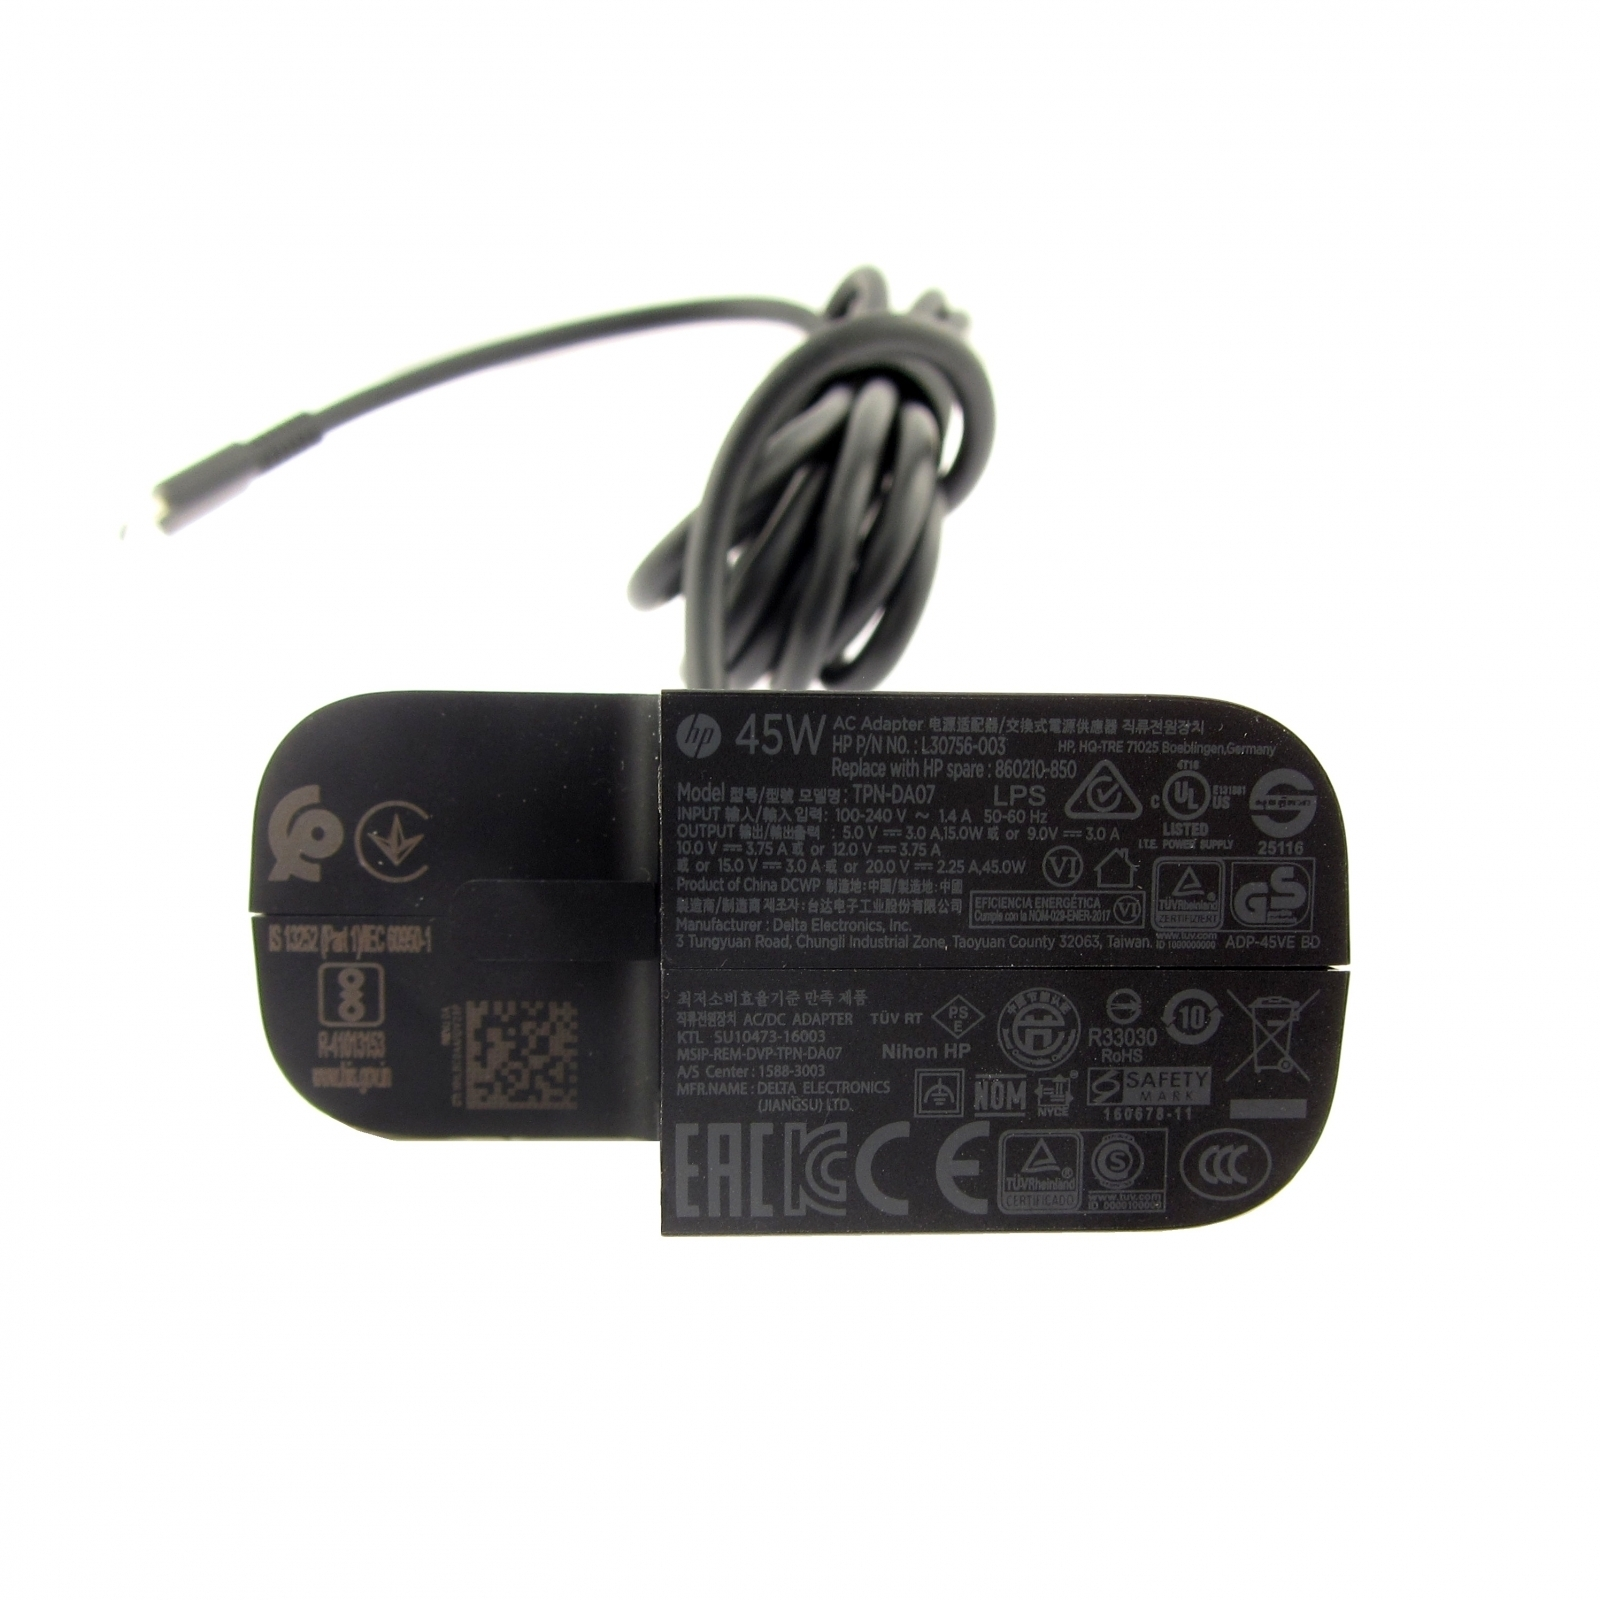 Netzteil 45 Original USB-C HP L30756-001 Watt